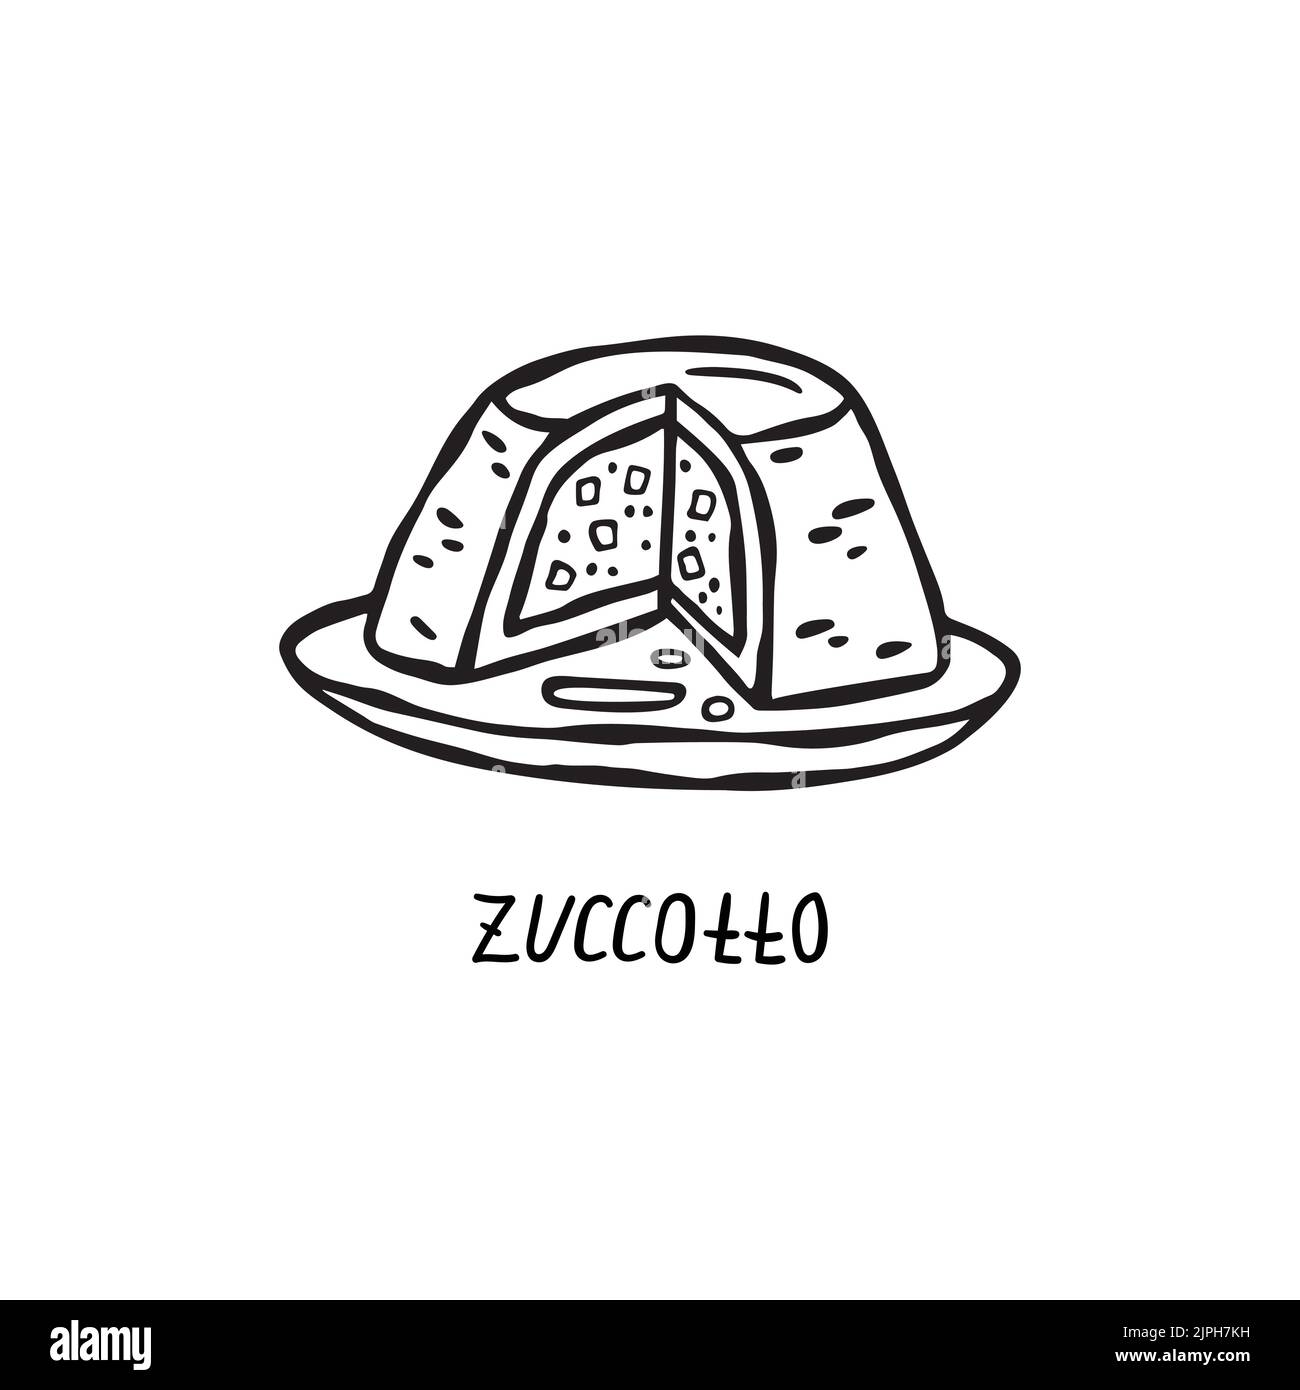 Vektor Handgezeichnete Illustration der italienischen Küche. Zuccotto Stock Vektor